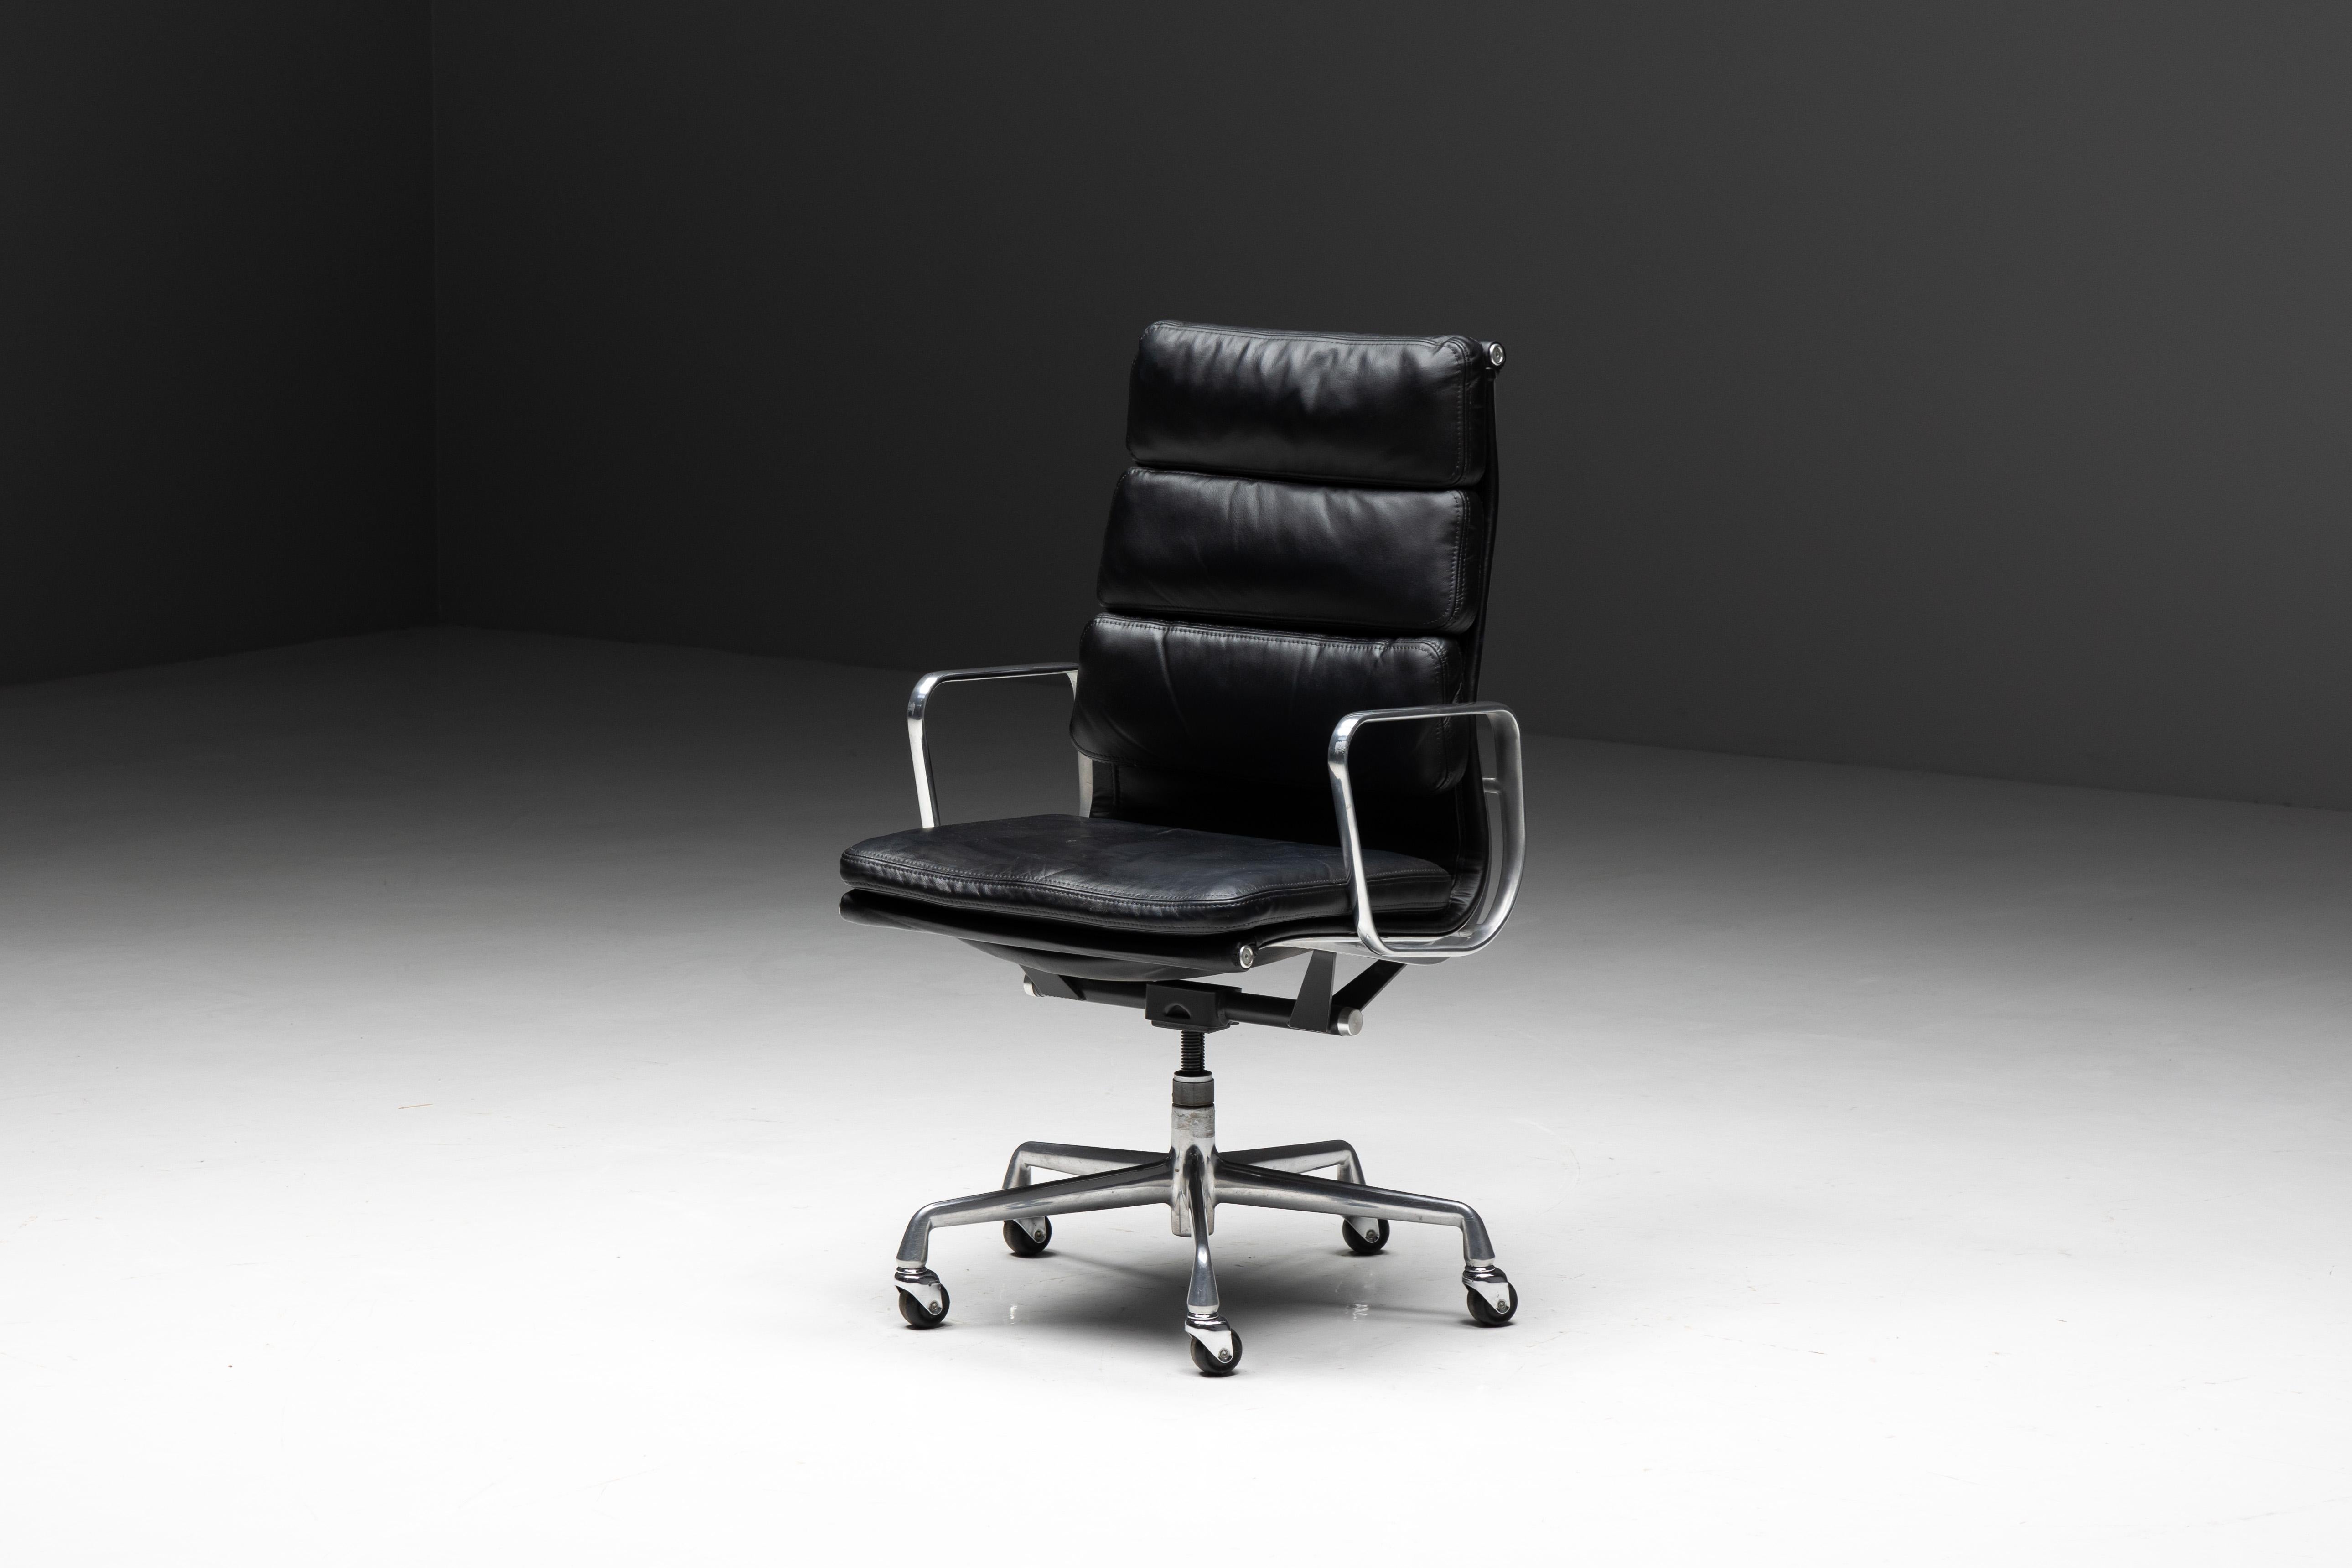 Chaise de bureau softpad de Charles et Ray Eames, produite par Herman Miller. Cette chaise distinguée, fabriquée en tant qu'édition américaine originale pour Herman Miller, est dotée d'une assise et d'un dossier en cuir noir élégant, complétés par